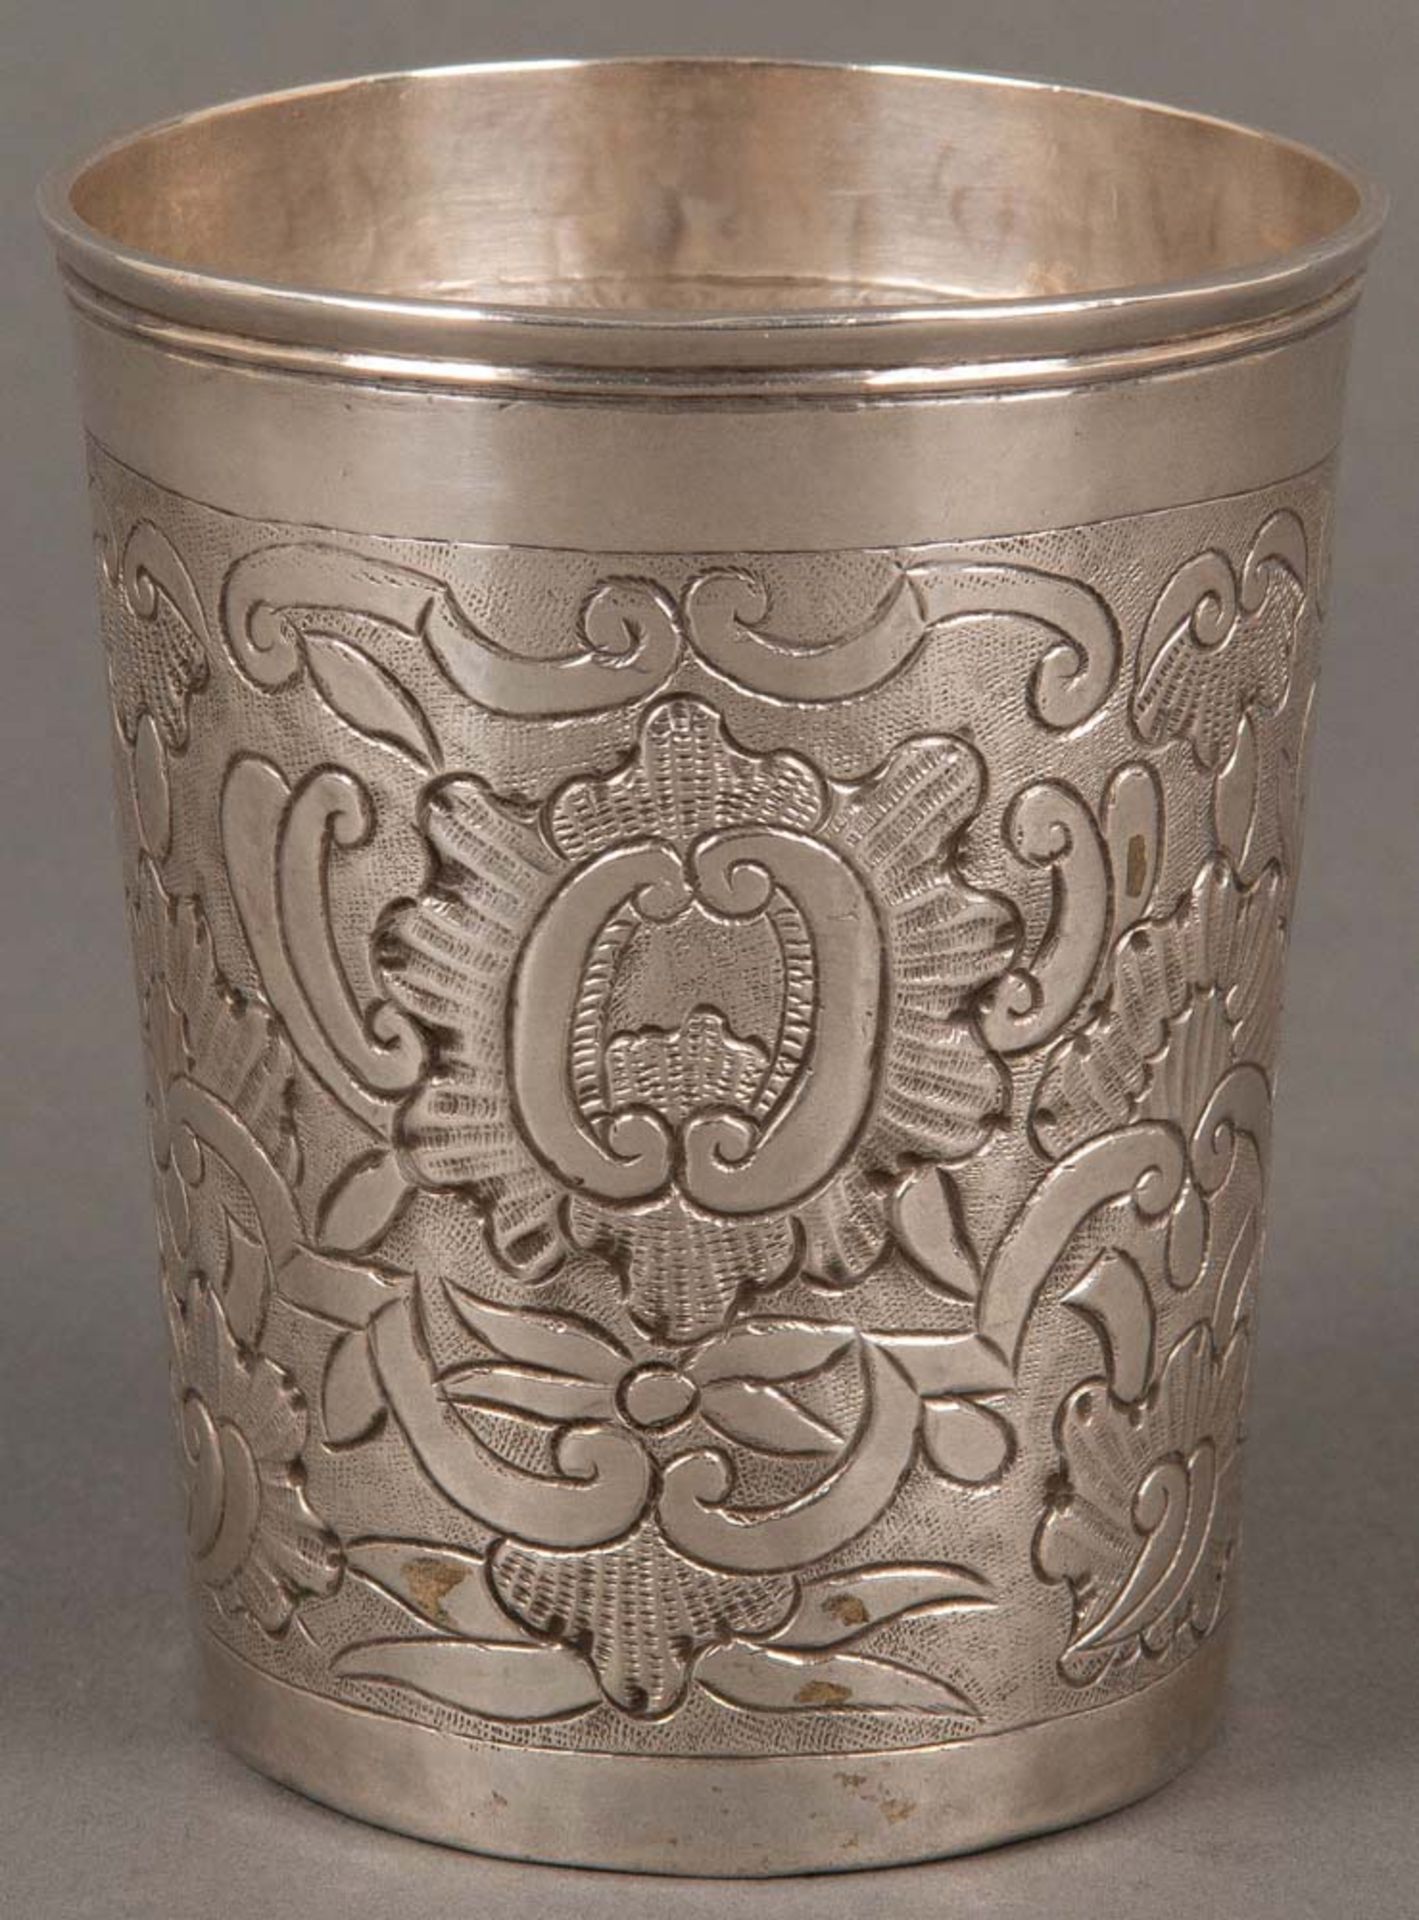 Becher. Moskau 1755. 84er Silber, ca. 95 g, ziseliert, am Boden gepunzt Meister Fedor Iwanow Tukalow